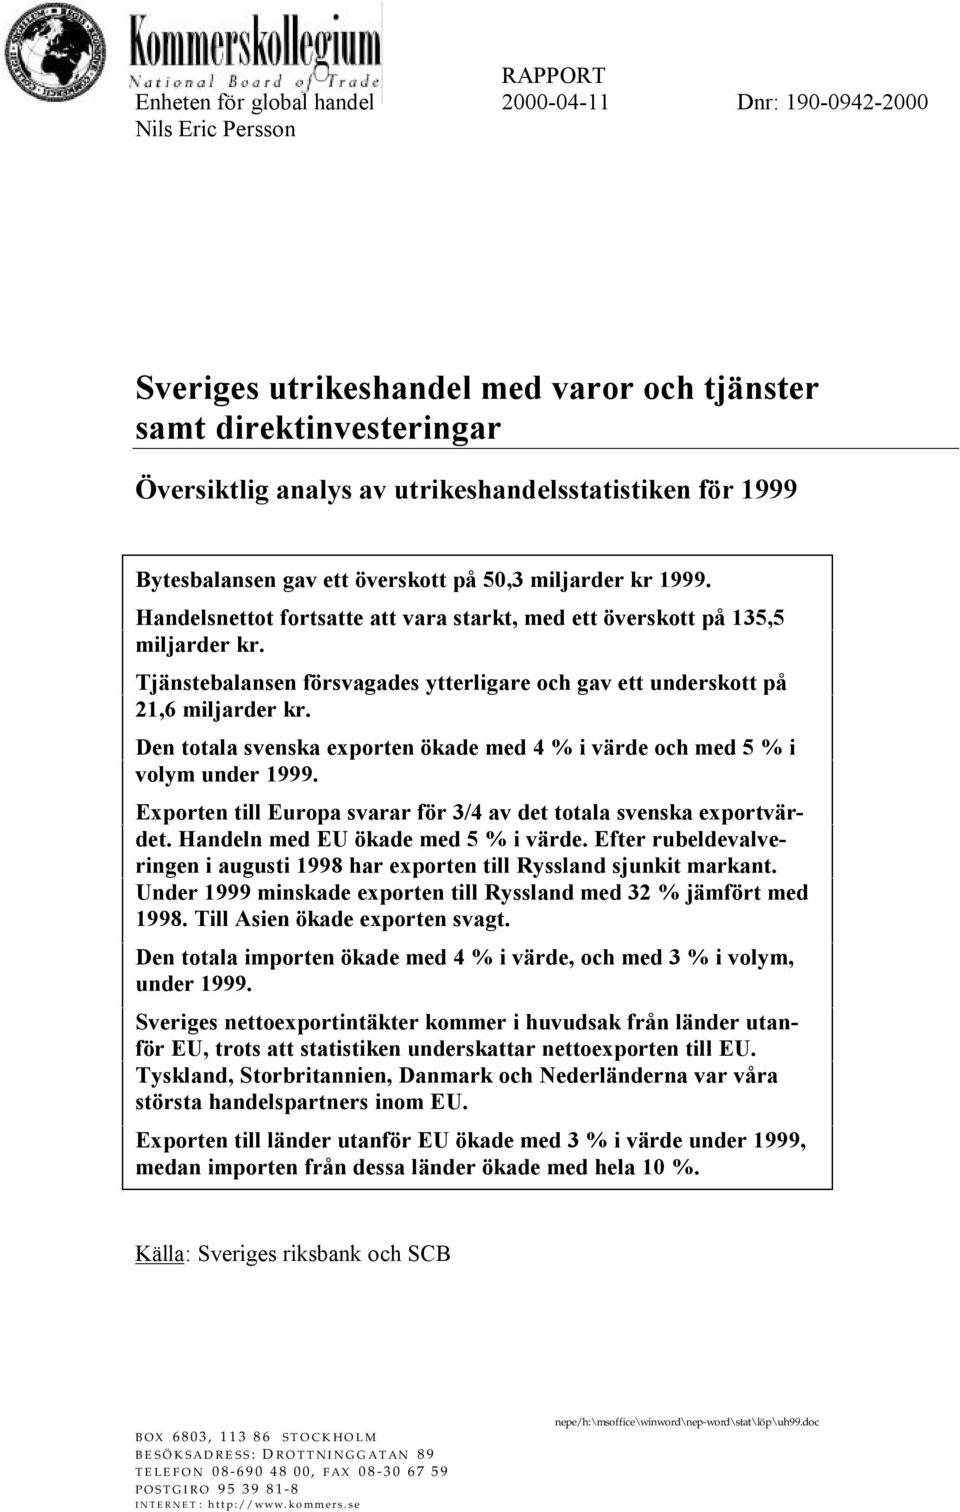 Tjänstebalansen försvagades ytterligare och gav ett underskott på 21,6 miljarder kr. Den totala svenska exporten ökade med 4 % i värde och med 5 % i volym under 1999.